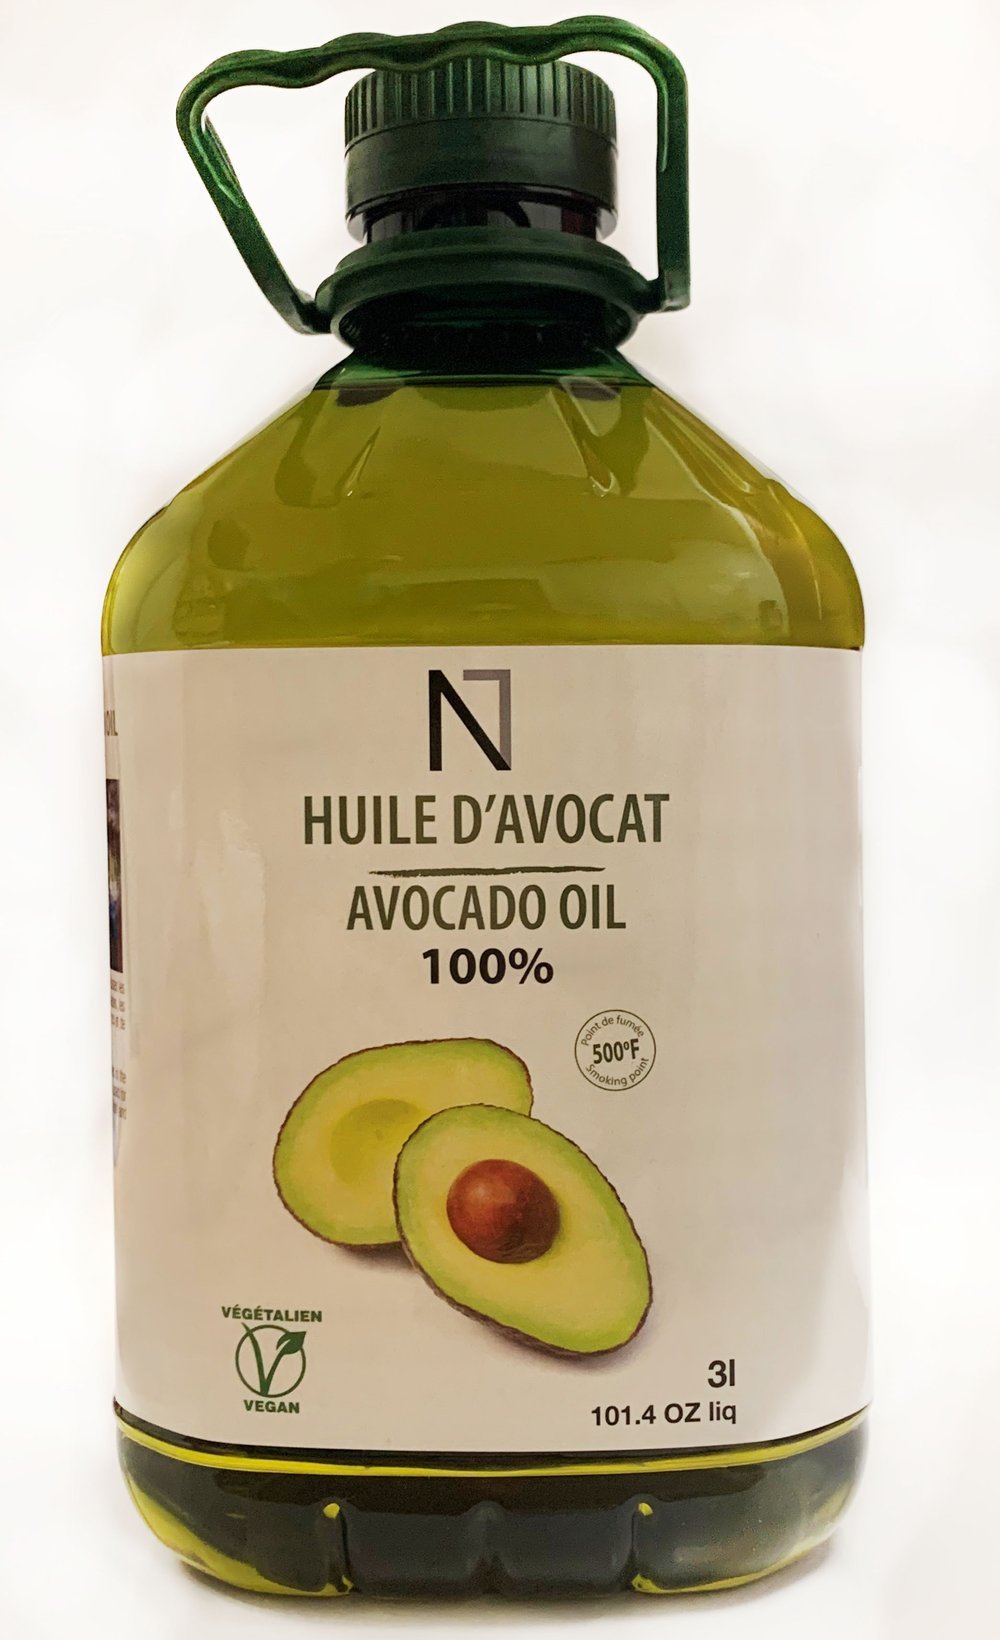 Avocado oil in 3 lt pet / Huile d'avocat 3 lt — Travaglini